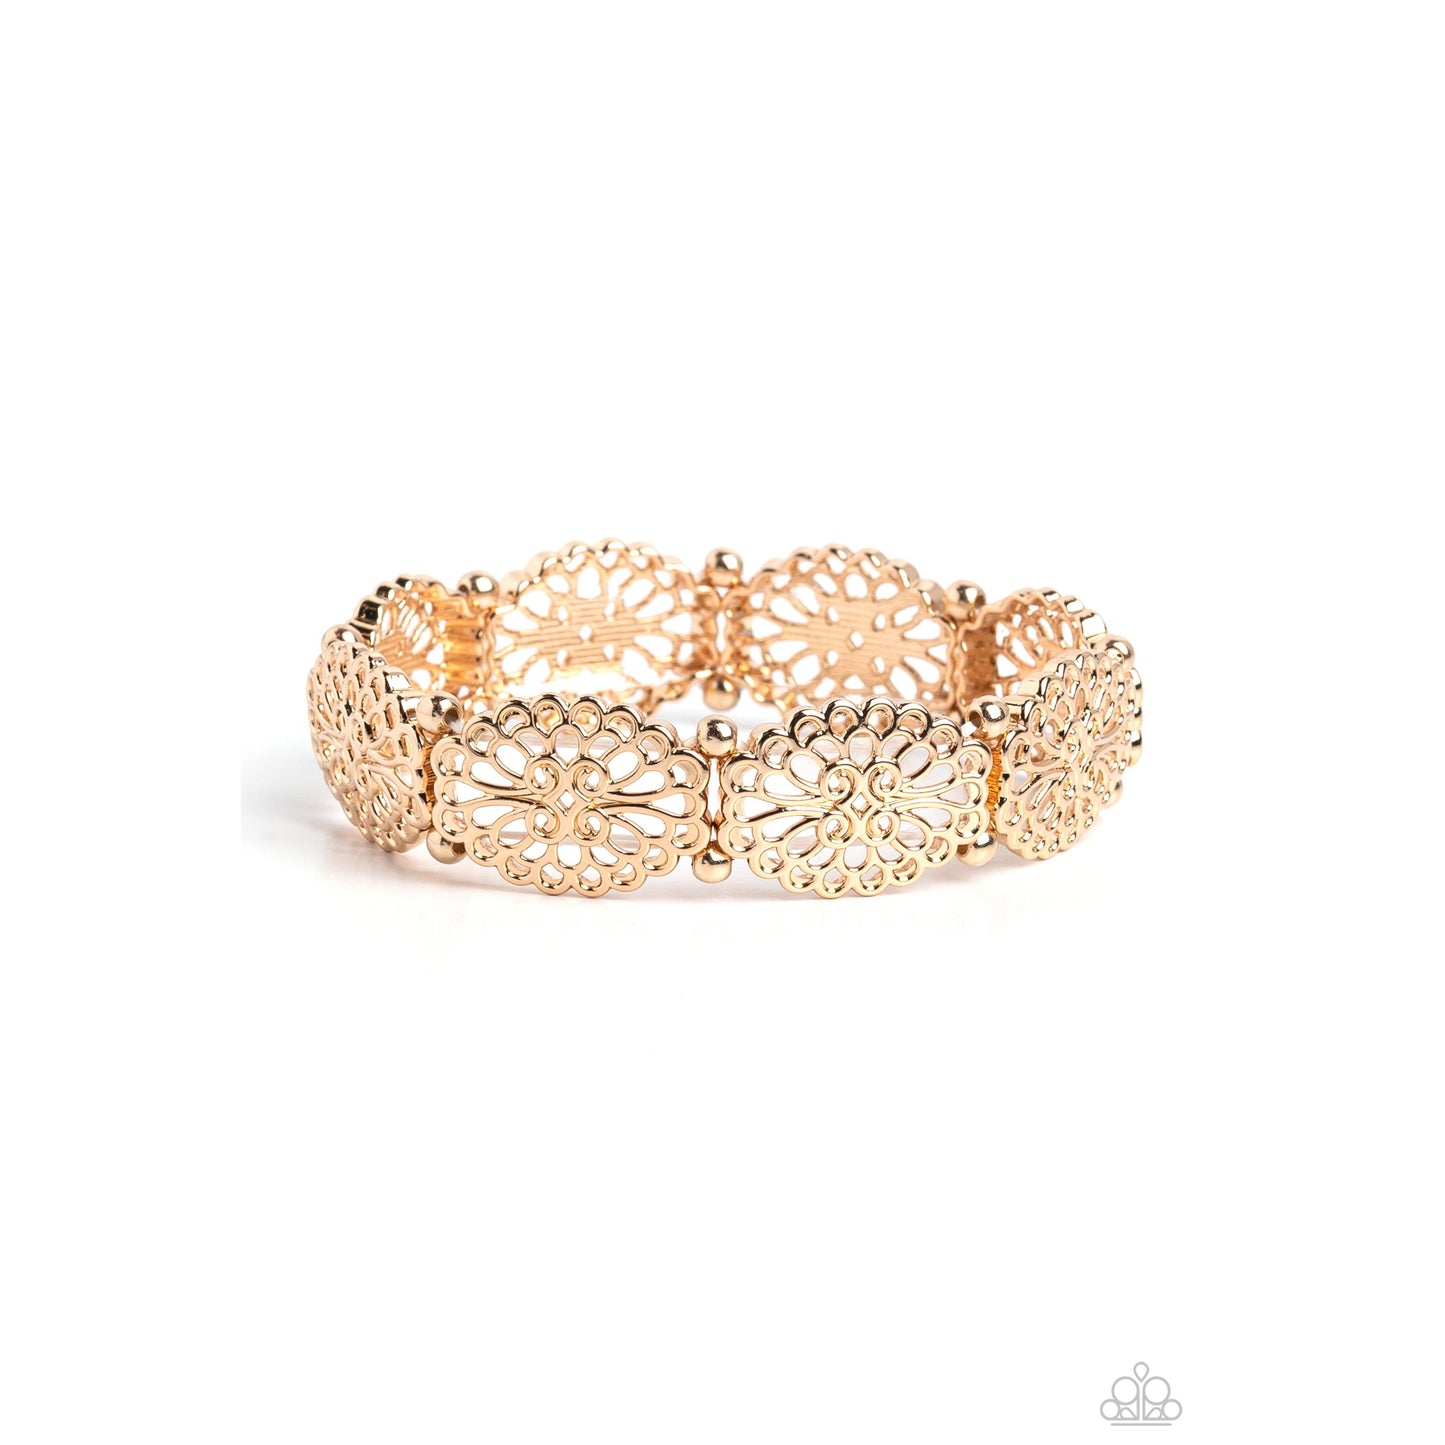 Curly Chic - Gold Filigree Bracelet - Bling by Danielle Baker